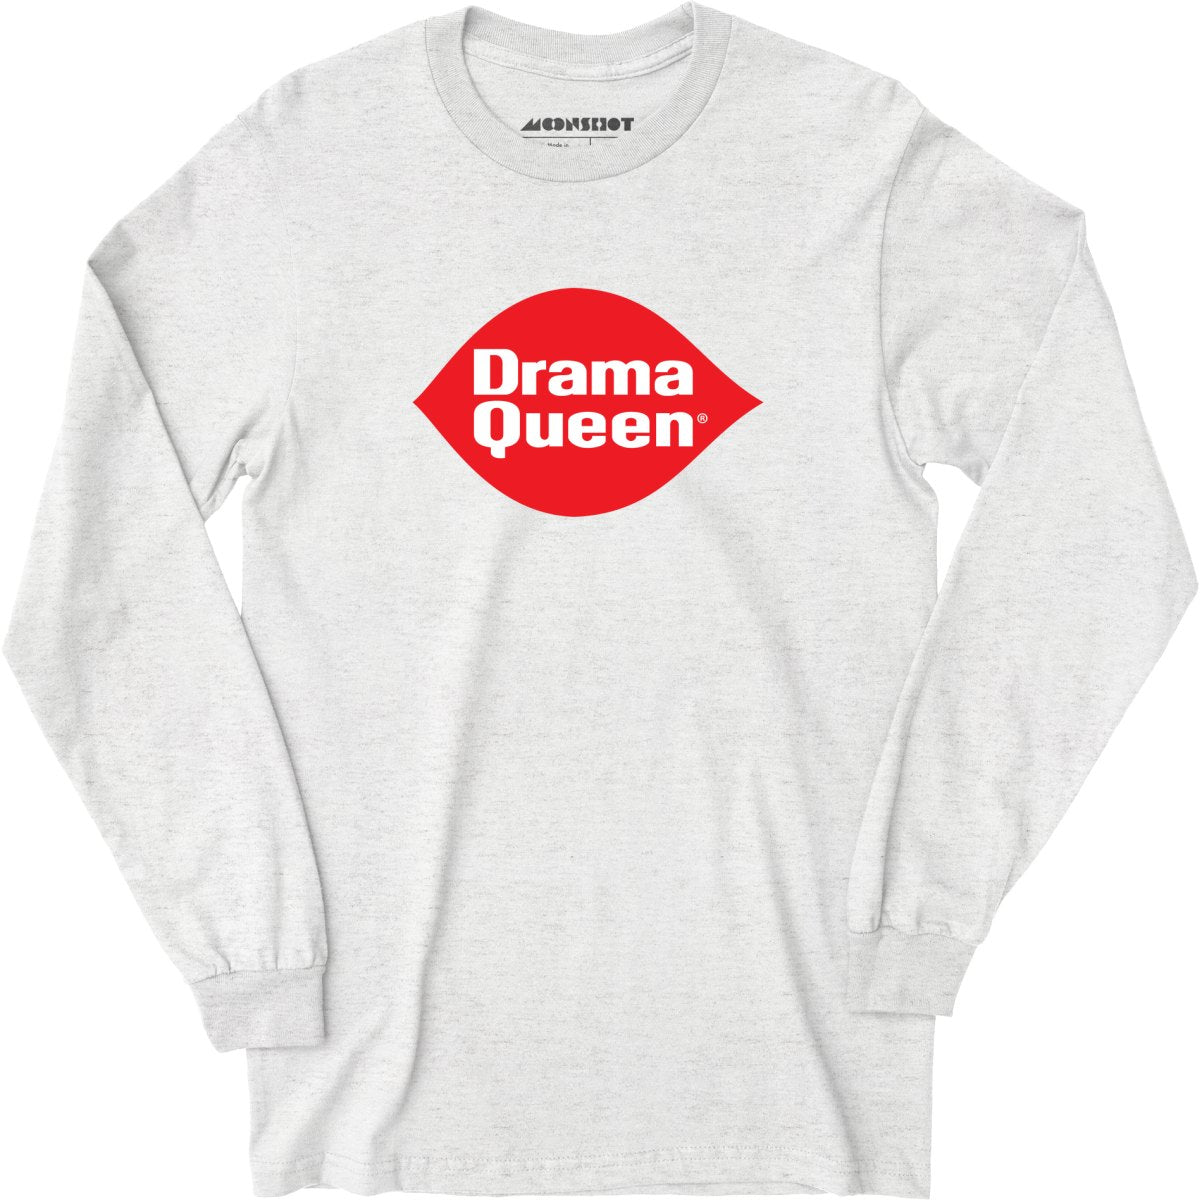 Drama Queen - Long Sleeve T-Shirt